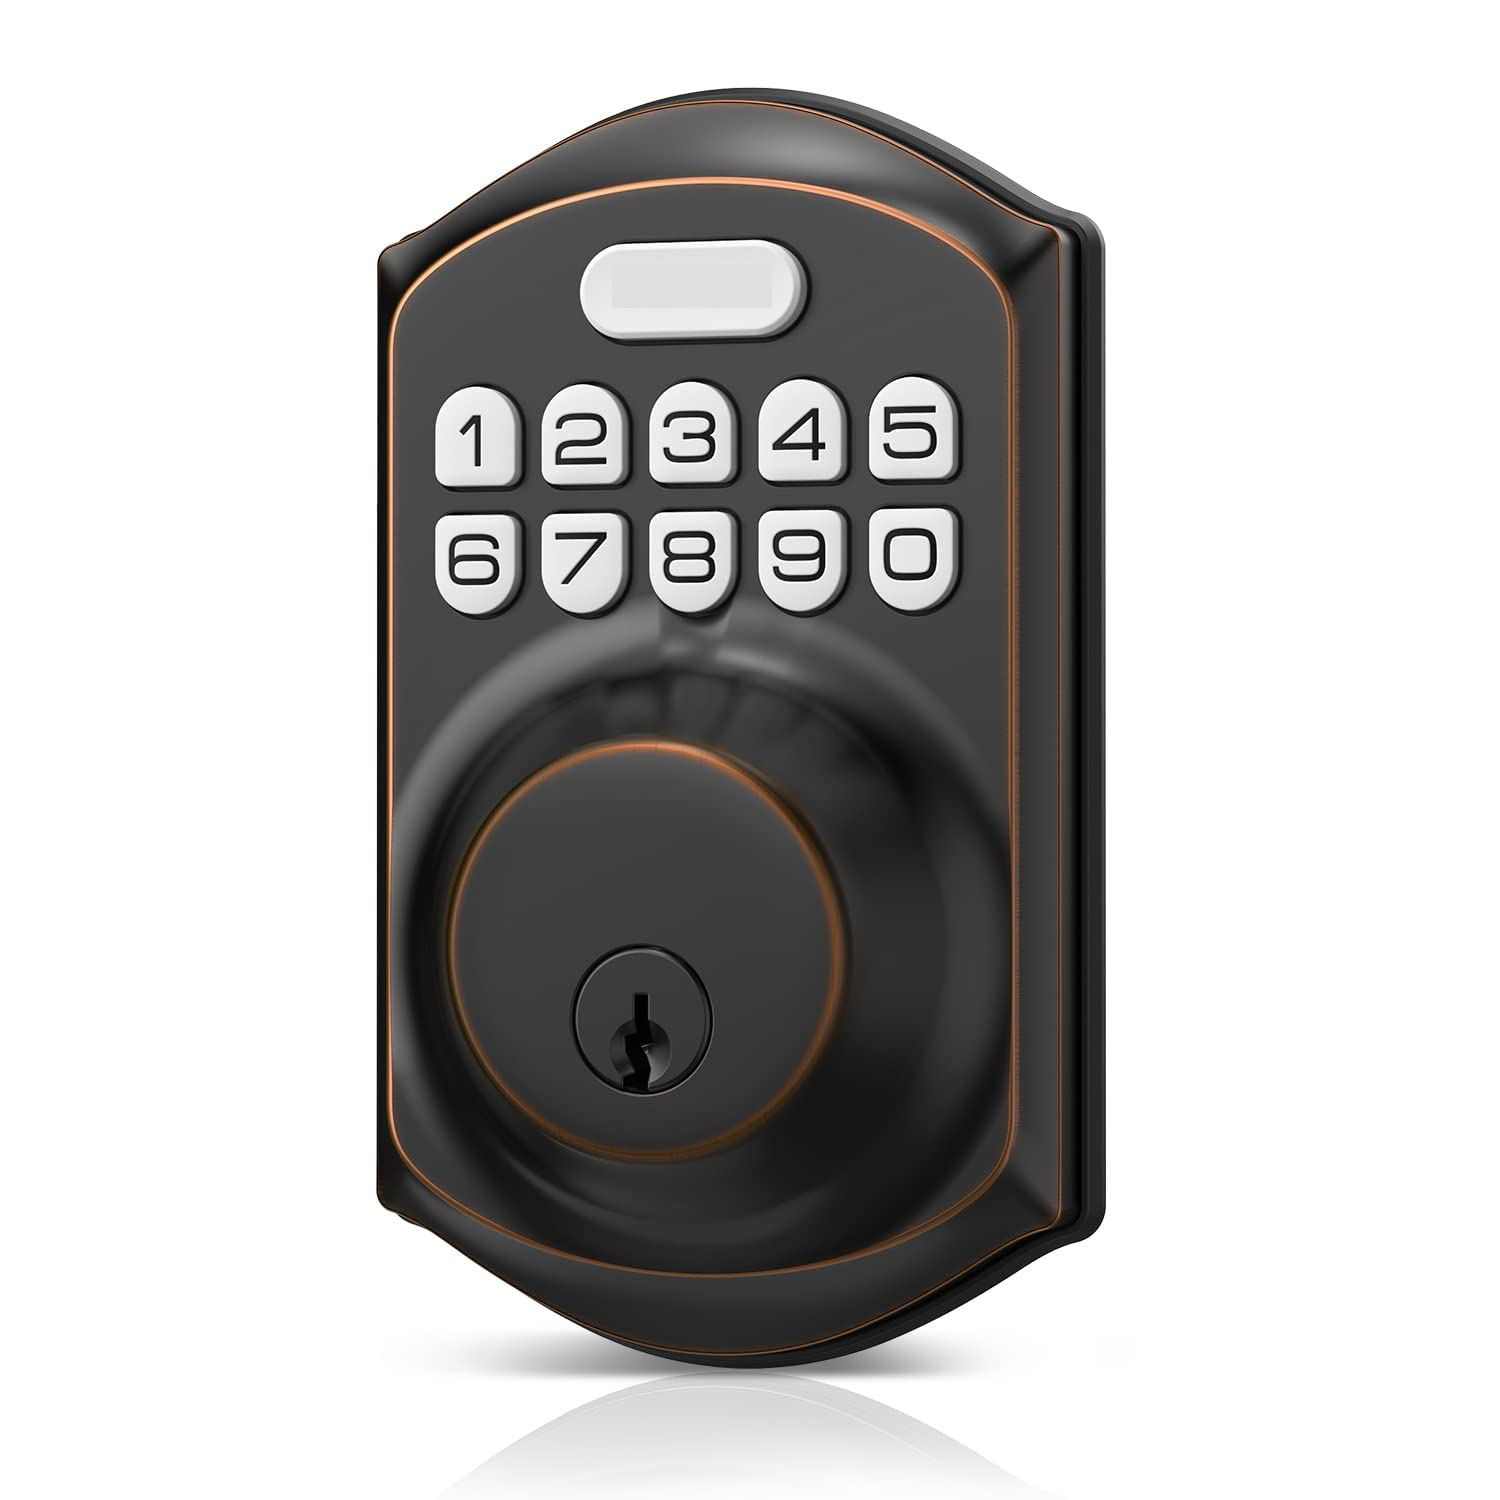 Keyless Entry Door Lock with Keypad - Smart Deadbolt Lock for Front Door with 2 Keys - Auto Lock - Easy Installation - Satin Nickel